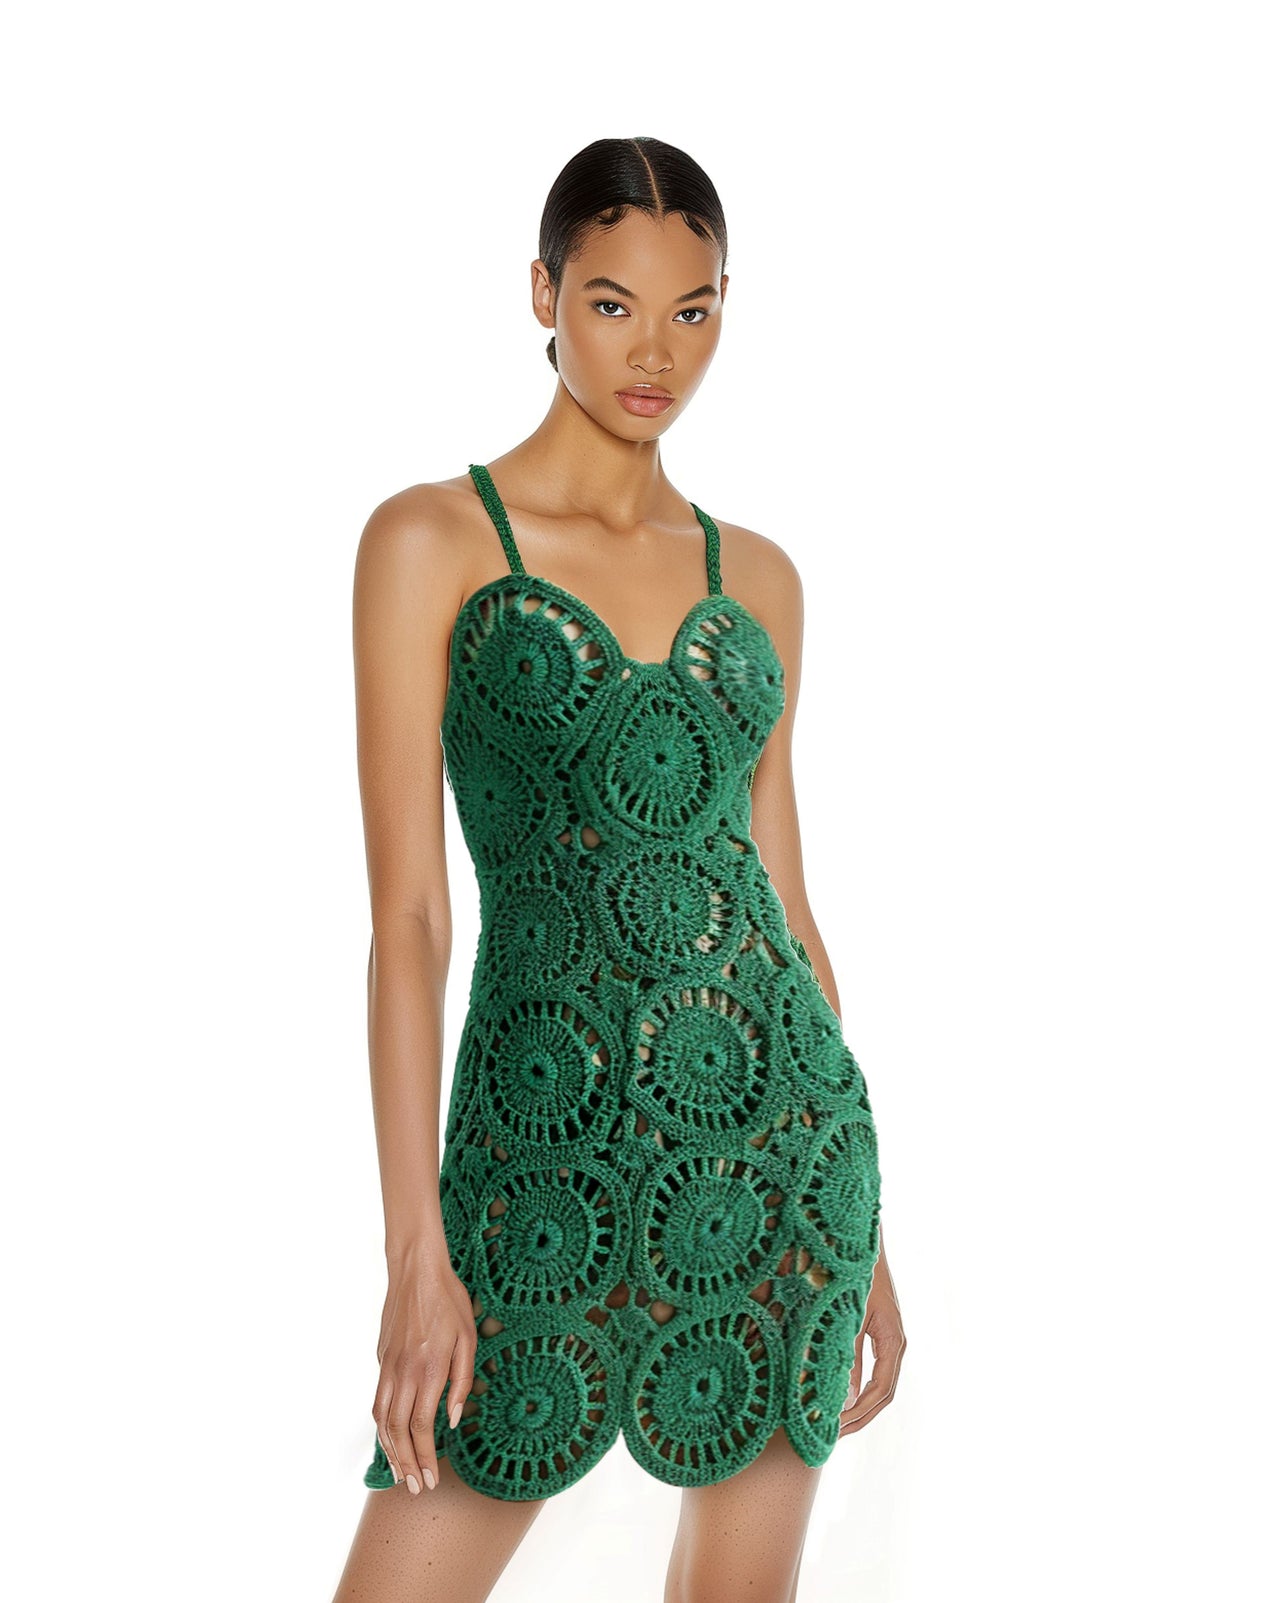 Green Crochet Dress With Circular